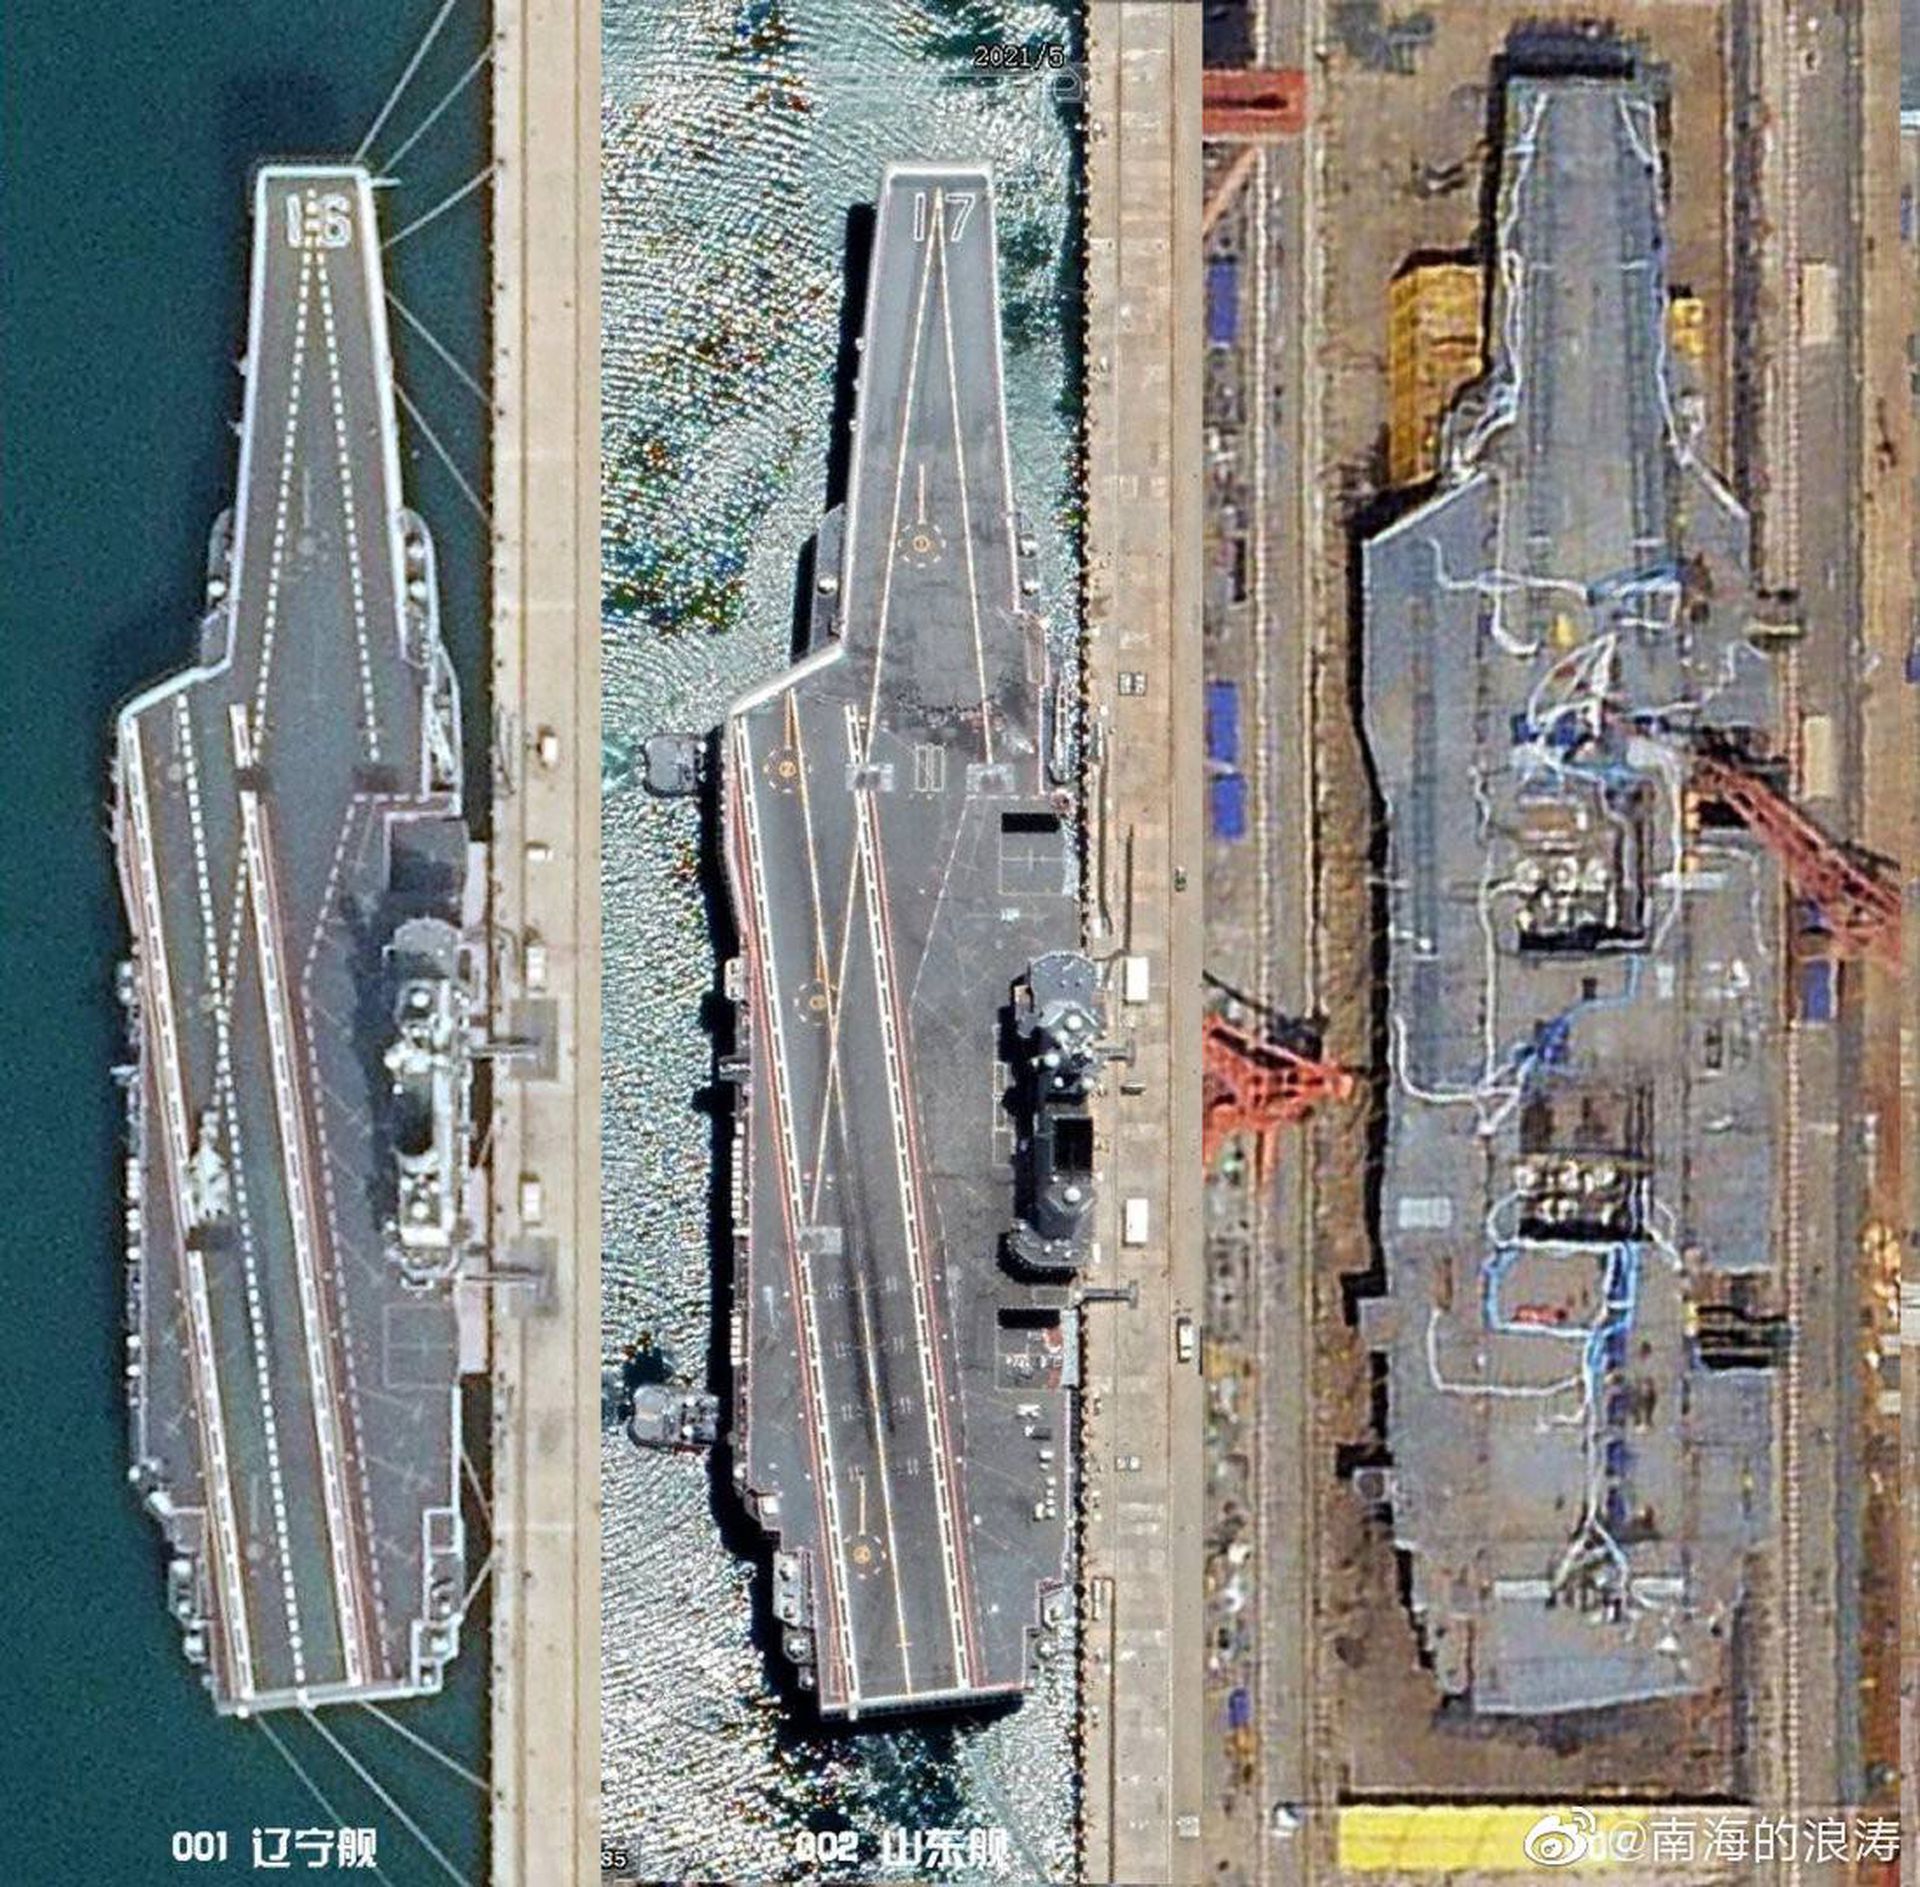 中国001号辽宁舰、002号山东舰和003号航母的对比图。（微博@南海的浪涛）